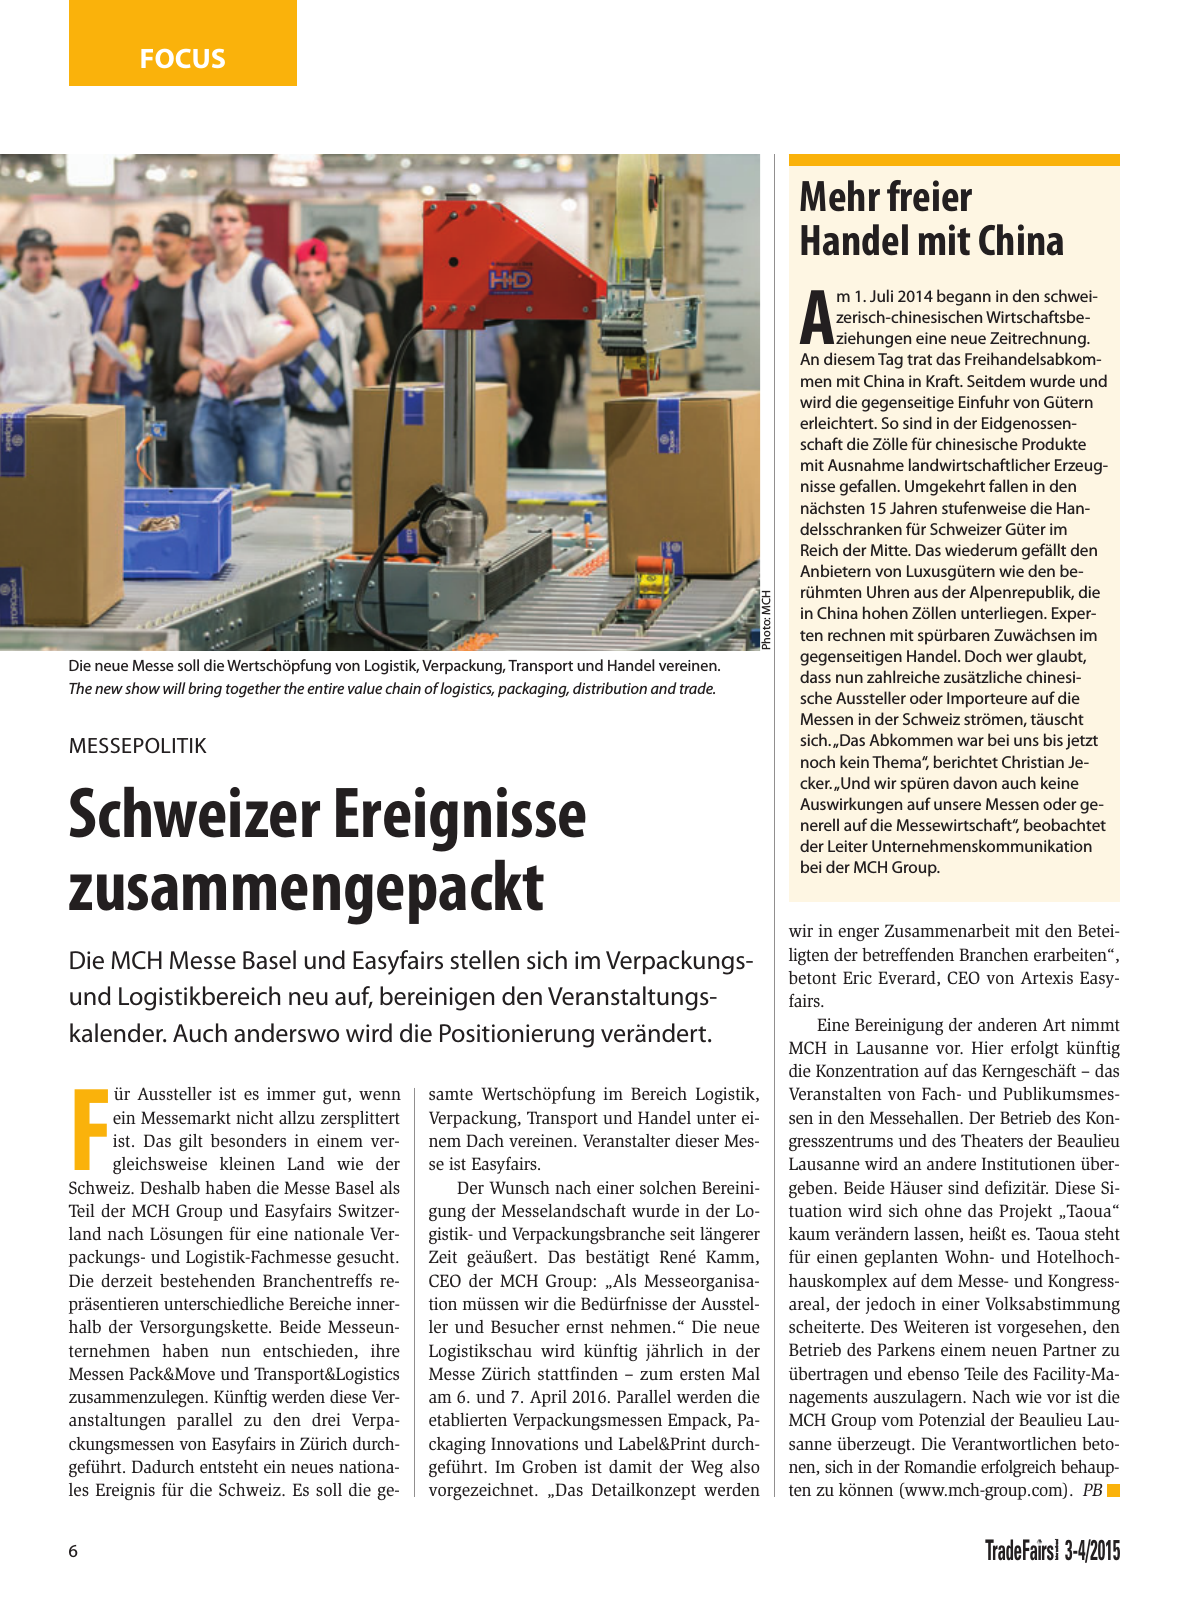 Vorschau TFI Trade-Fairs-International 03-04/2015 Seite 6